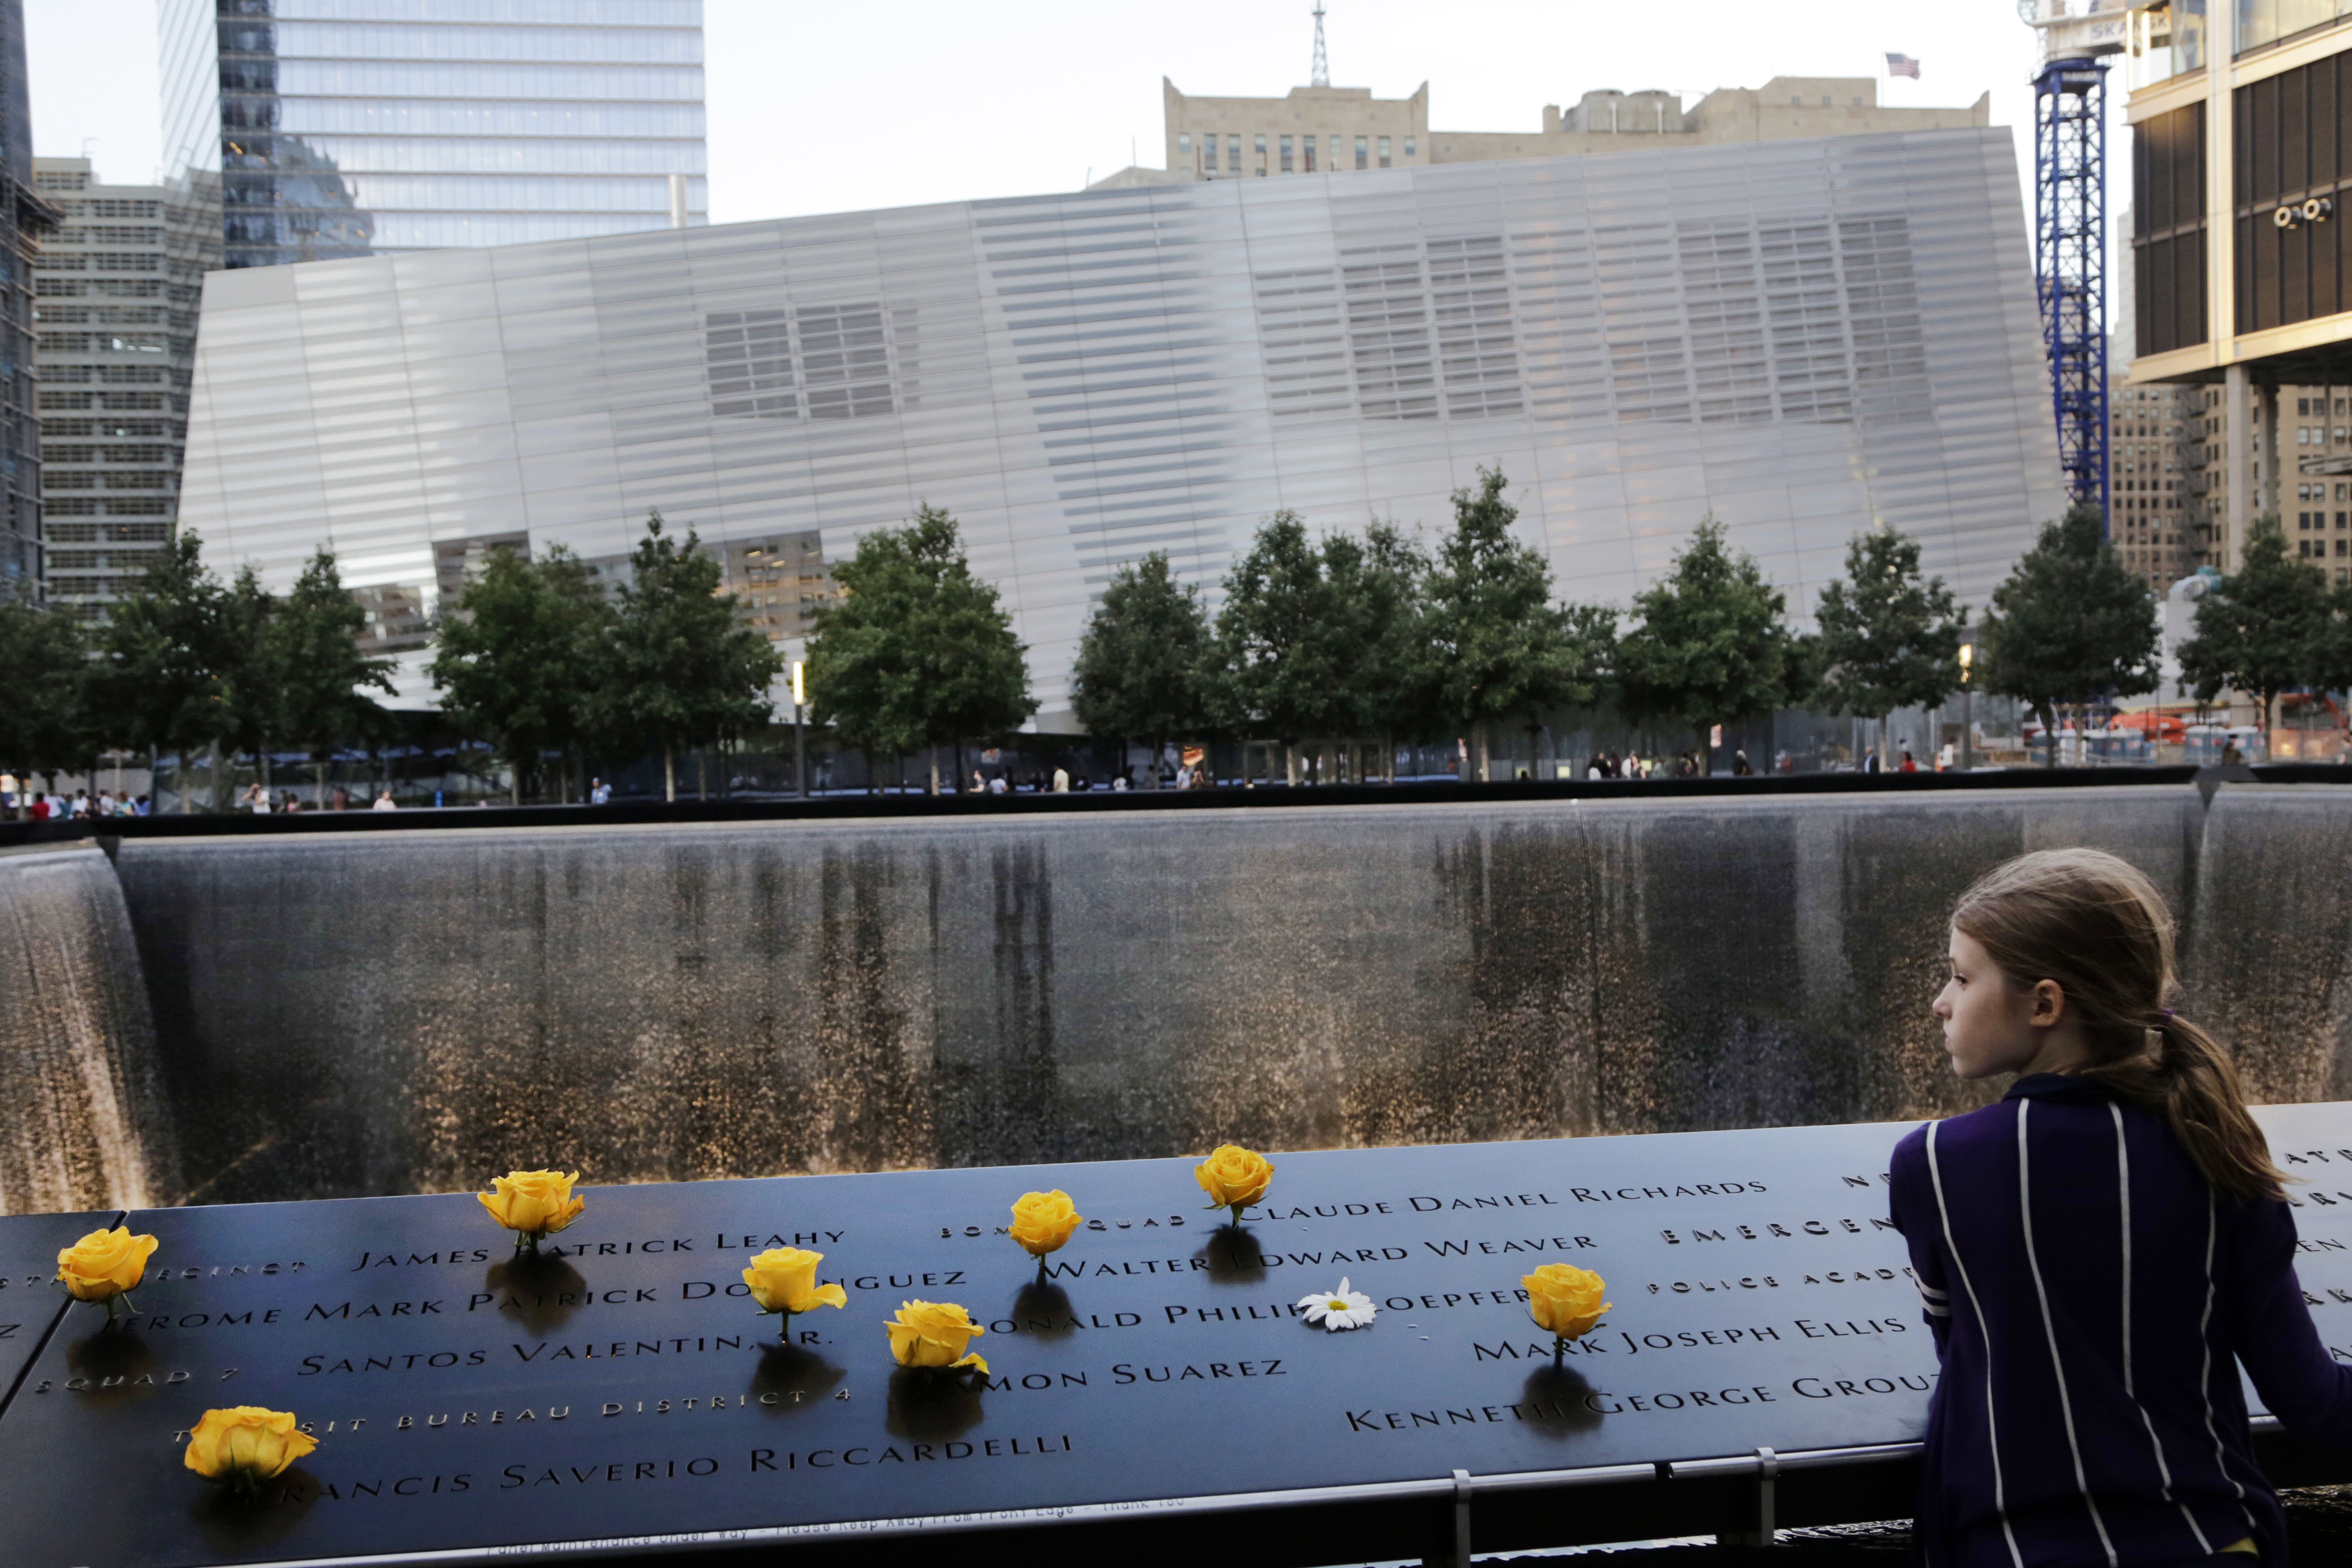 22.11 9. Мемориал 9/11 в Нью-Йорке. Мемориал 11 сентября в Нью-Йорке. Национальный мемориал и музей 11 сентября Нью-Йорк. Музей 11 сентября в Нью-Йорке.